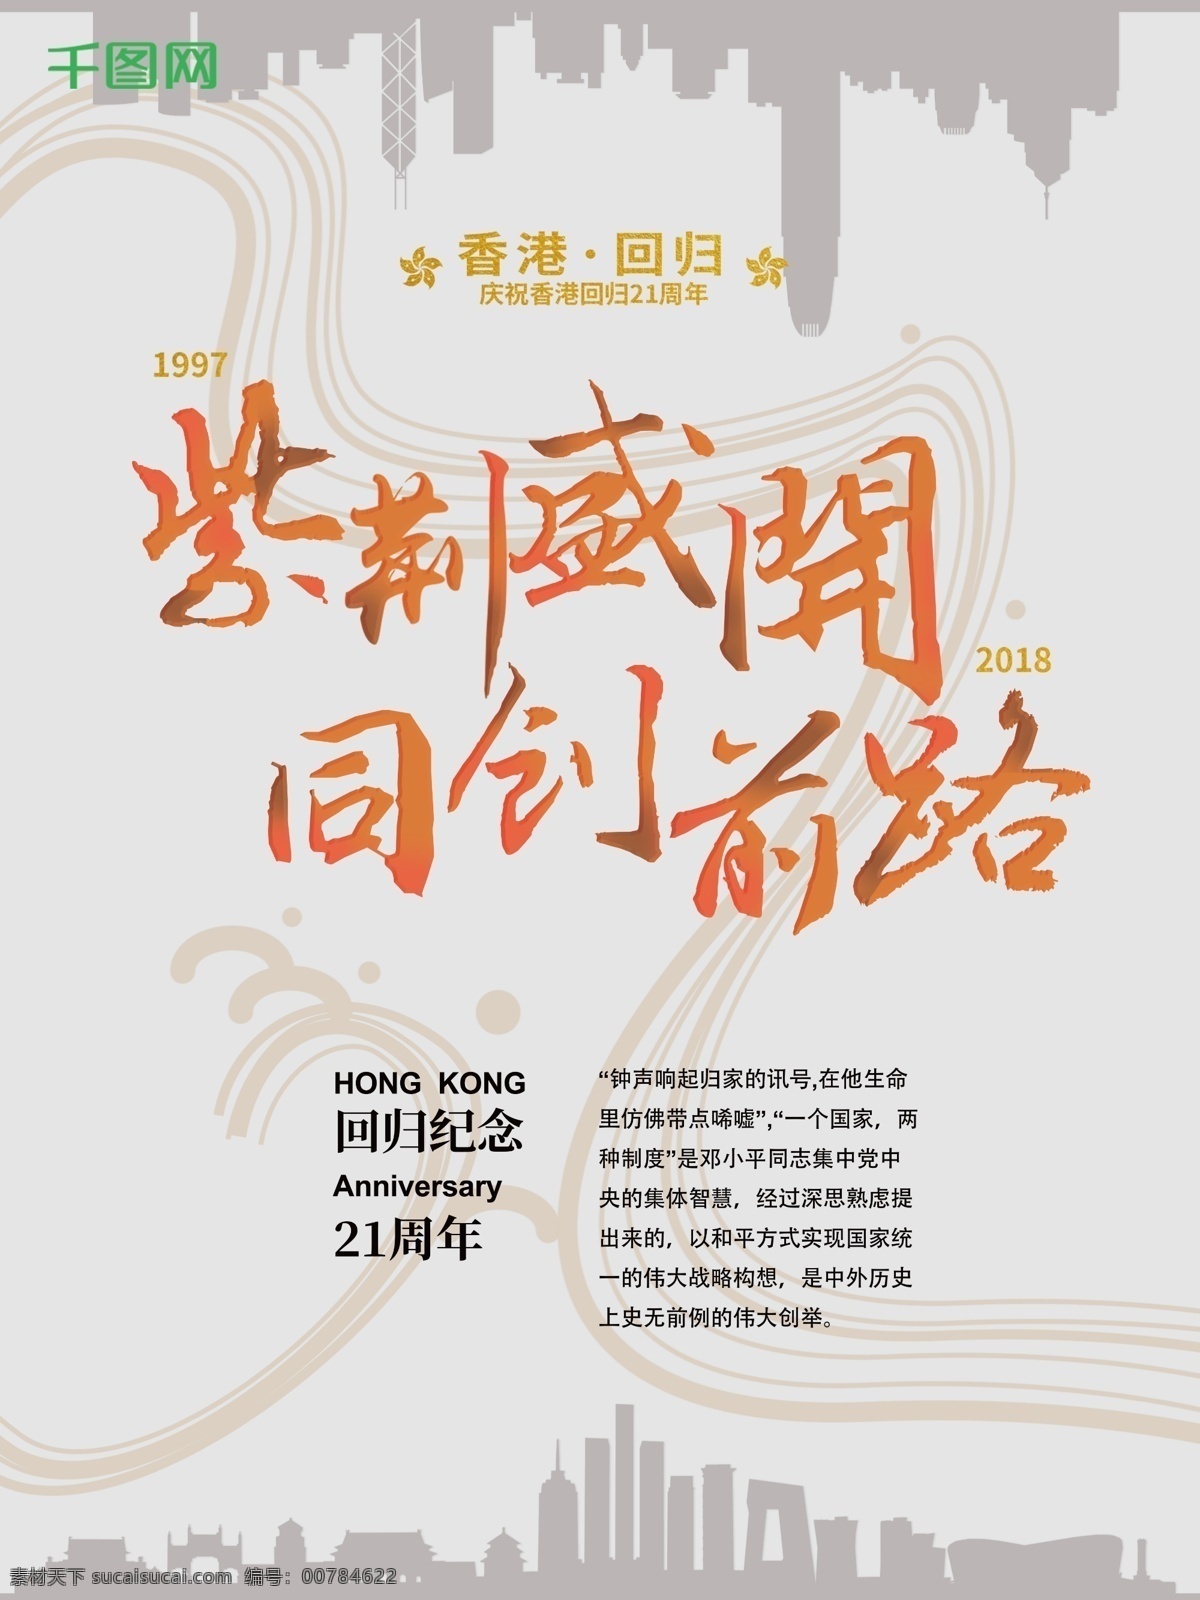 香港 回归 纪念日 周年 节日庆典 海报 21周年 紫荆 香港回归日 香港回归